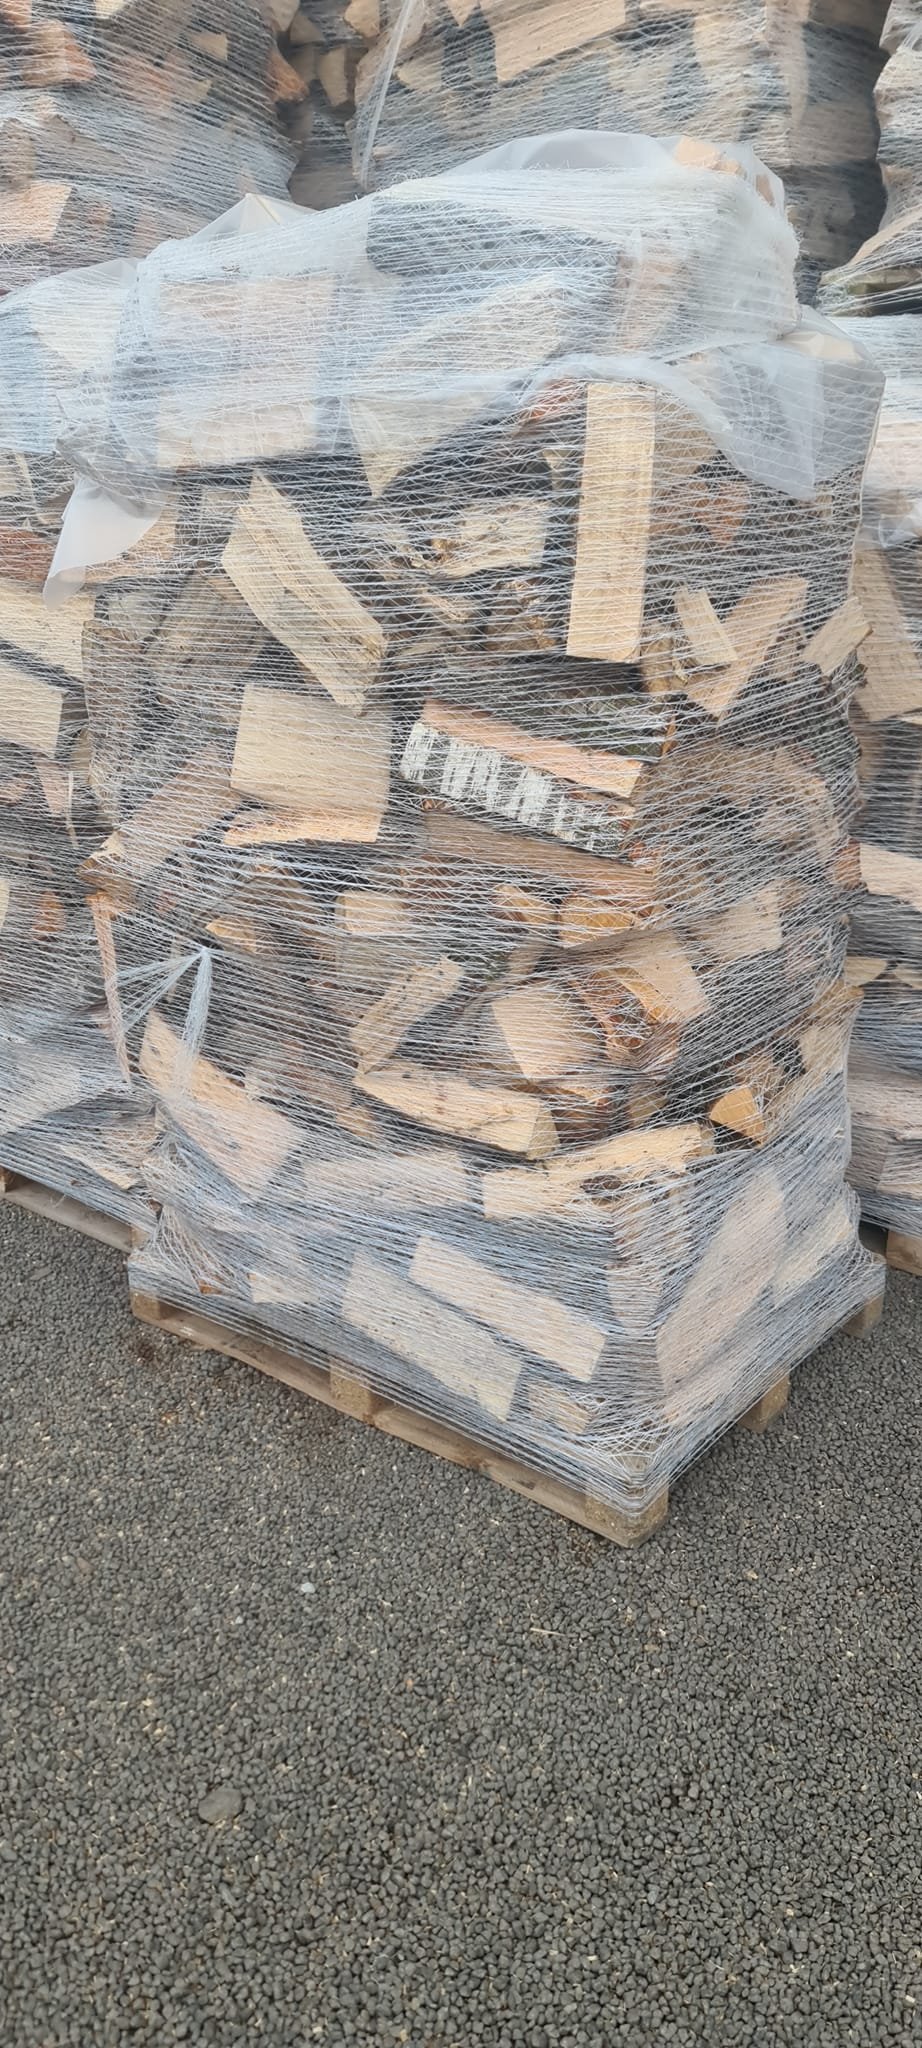 C'est fait, les premières palettes de bois de chauffage en vrac avec filet viennent de rentrer en stock. 